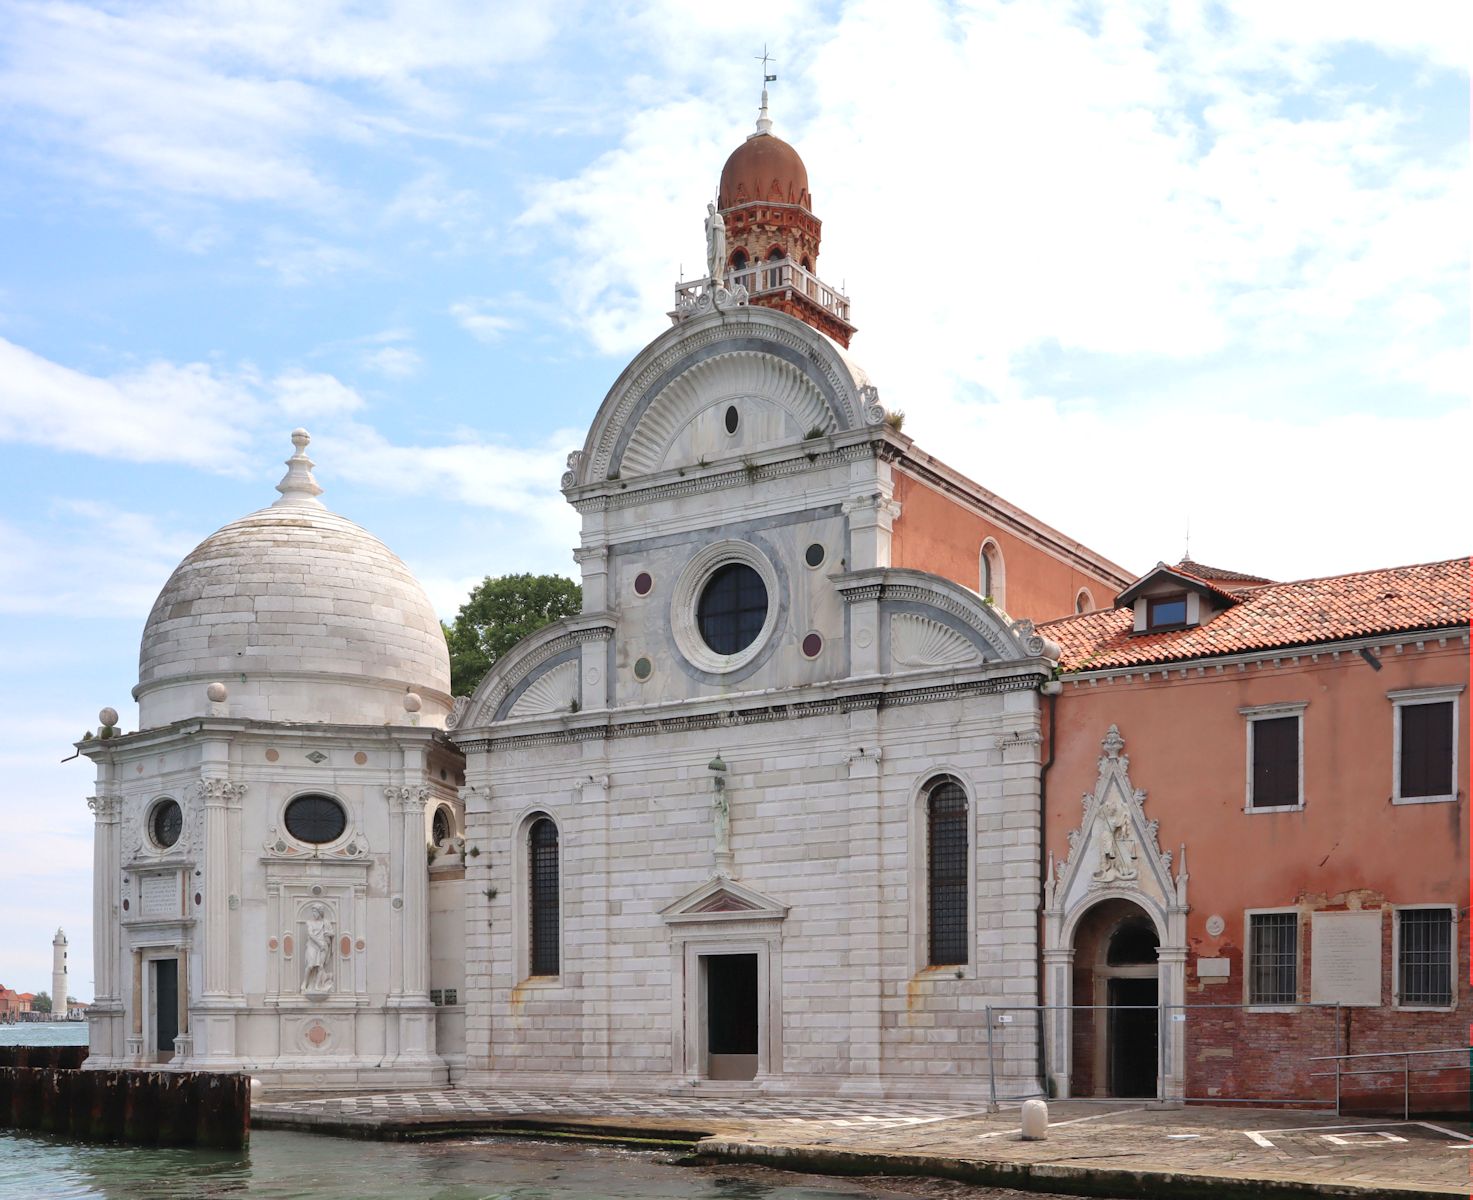 Kirche San Michele auf der Insel San Michele - der heutigen Friedhofsinsel - nahe der Insel Murano in Venedig